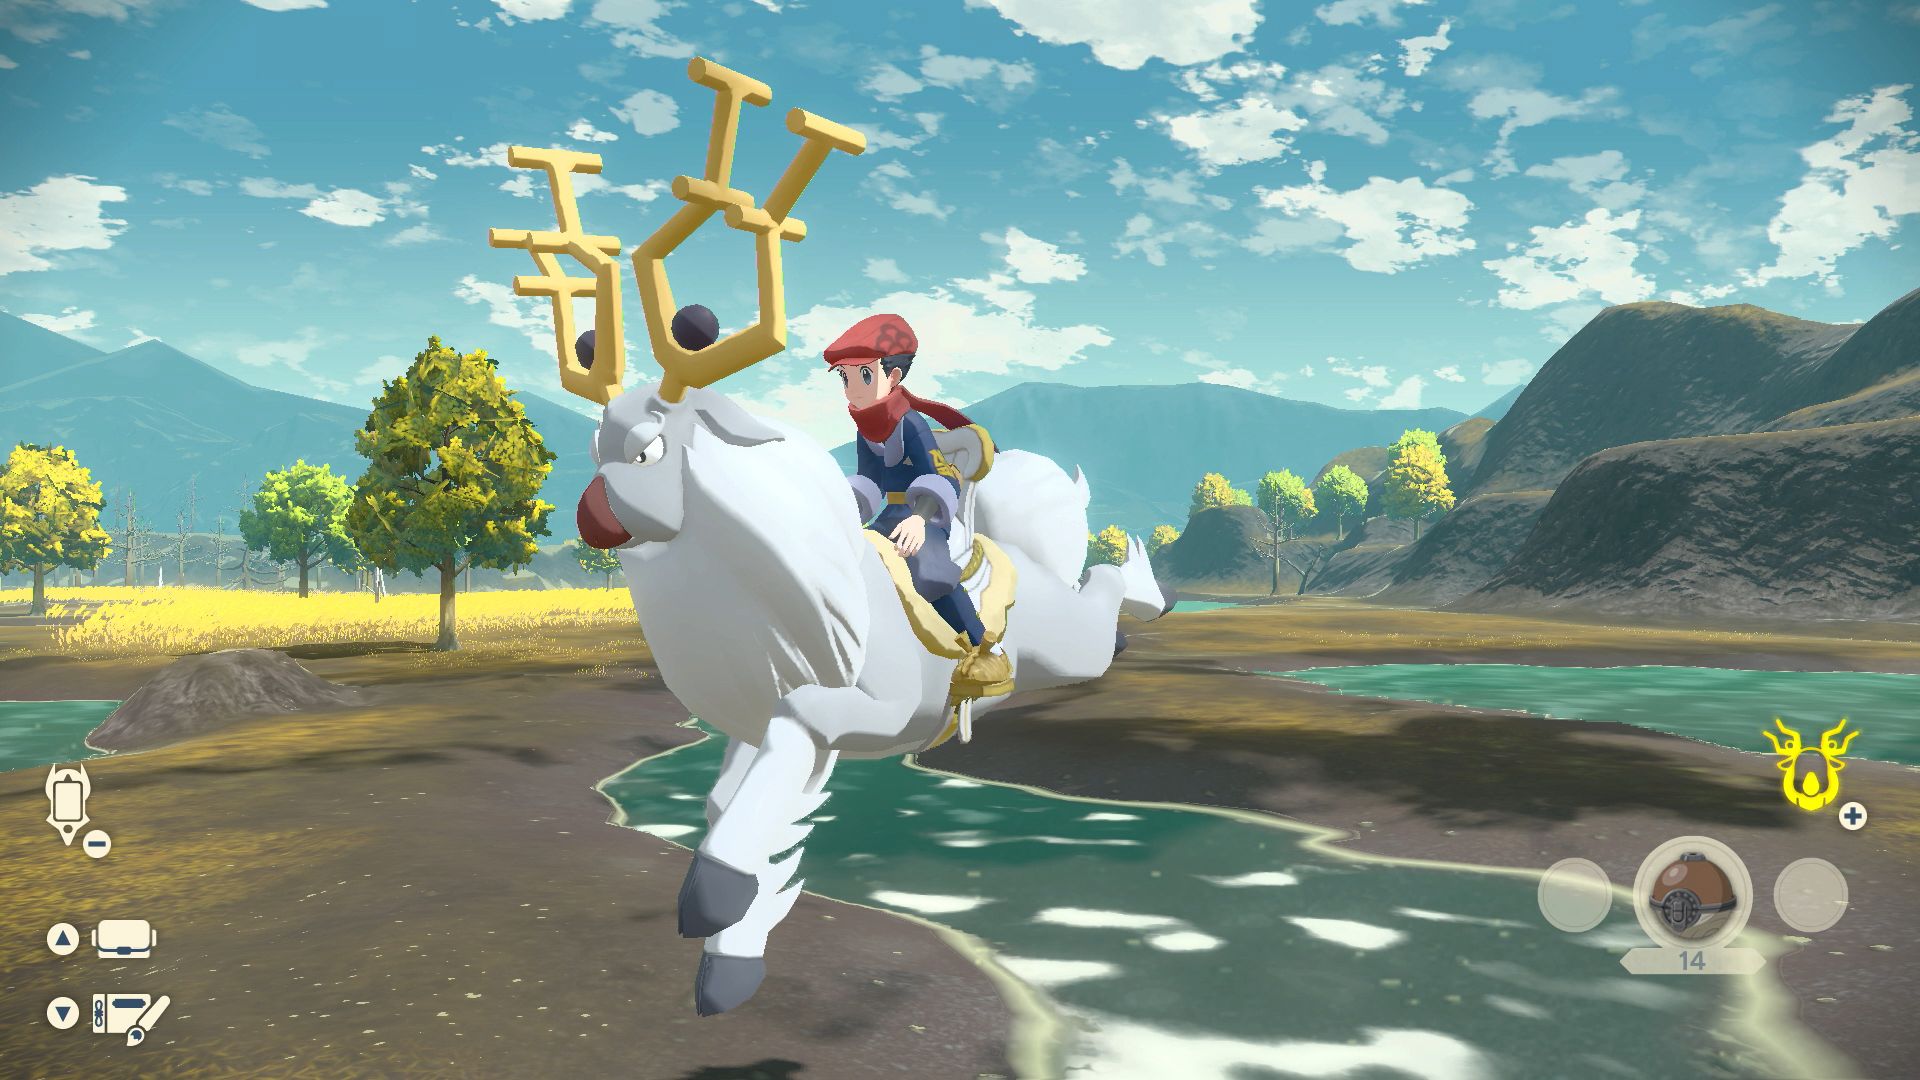 Screenshot From Pokémon Legends: Arceus Featuring A Player Riding A Wyrdeer.